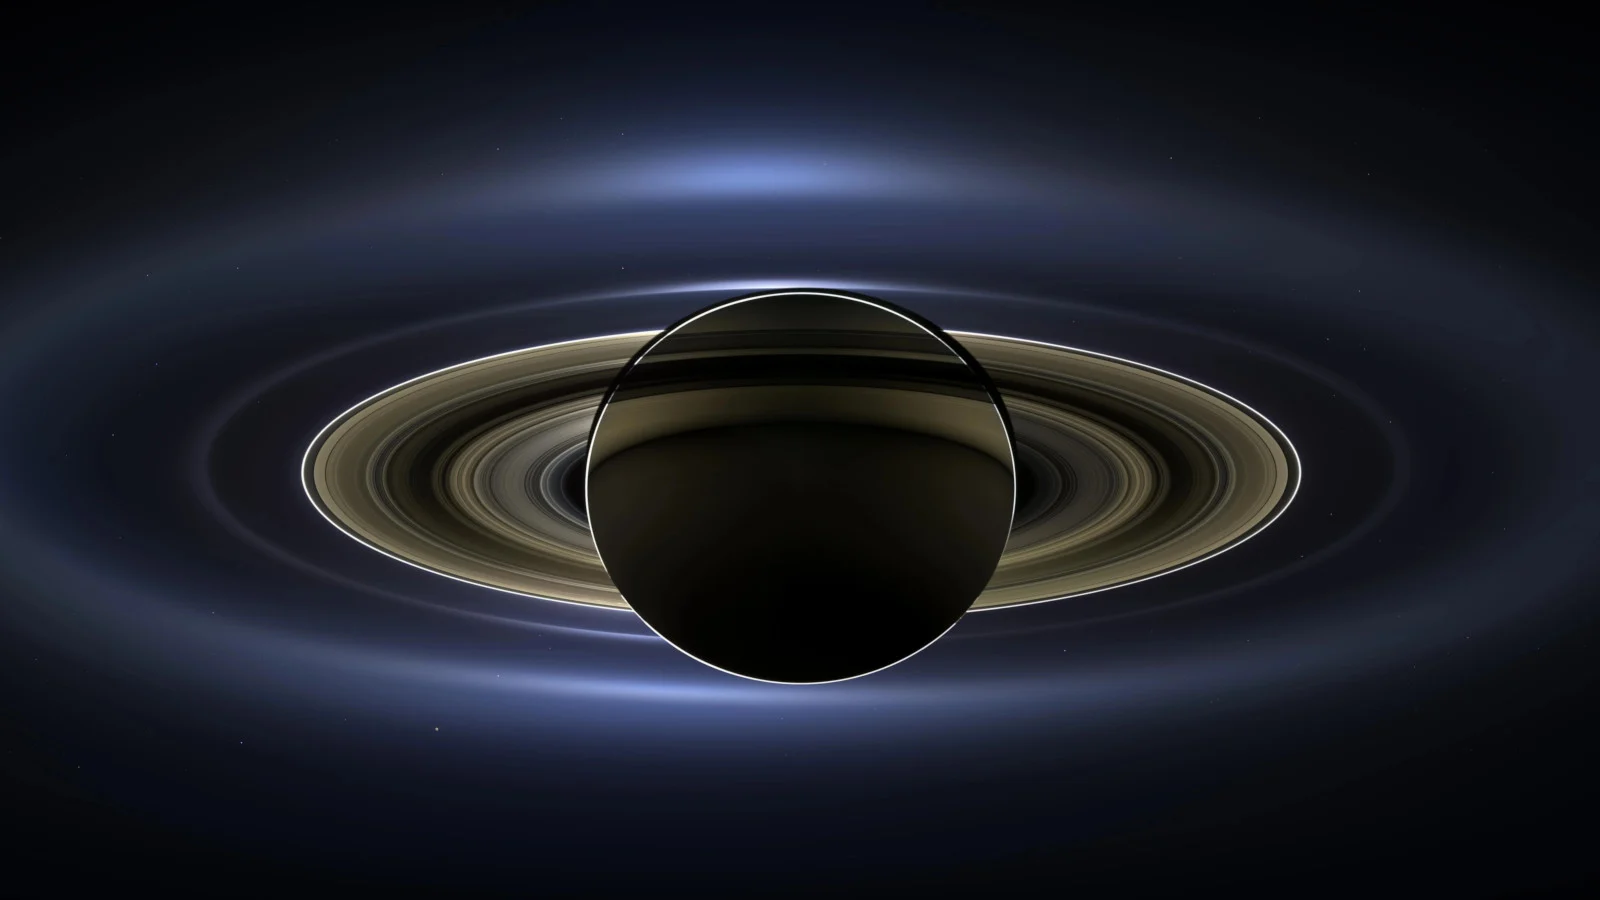 Anneaux de Saturne rétro-éclairés Cassini - NASA/JPL-Caltech